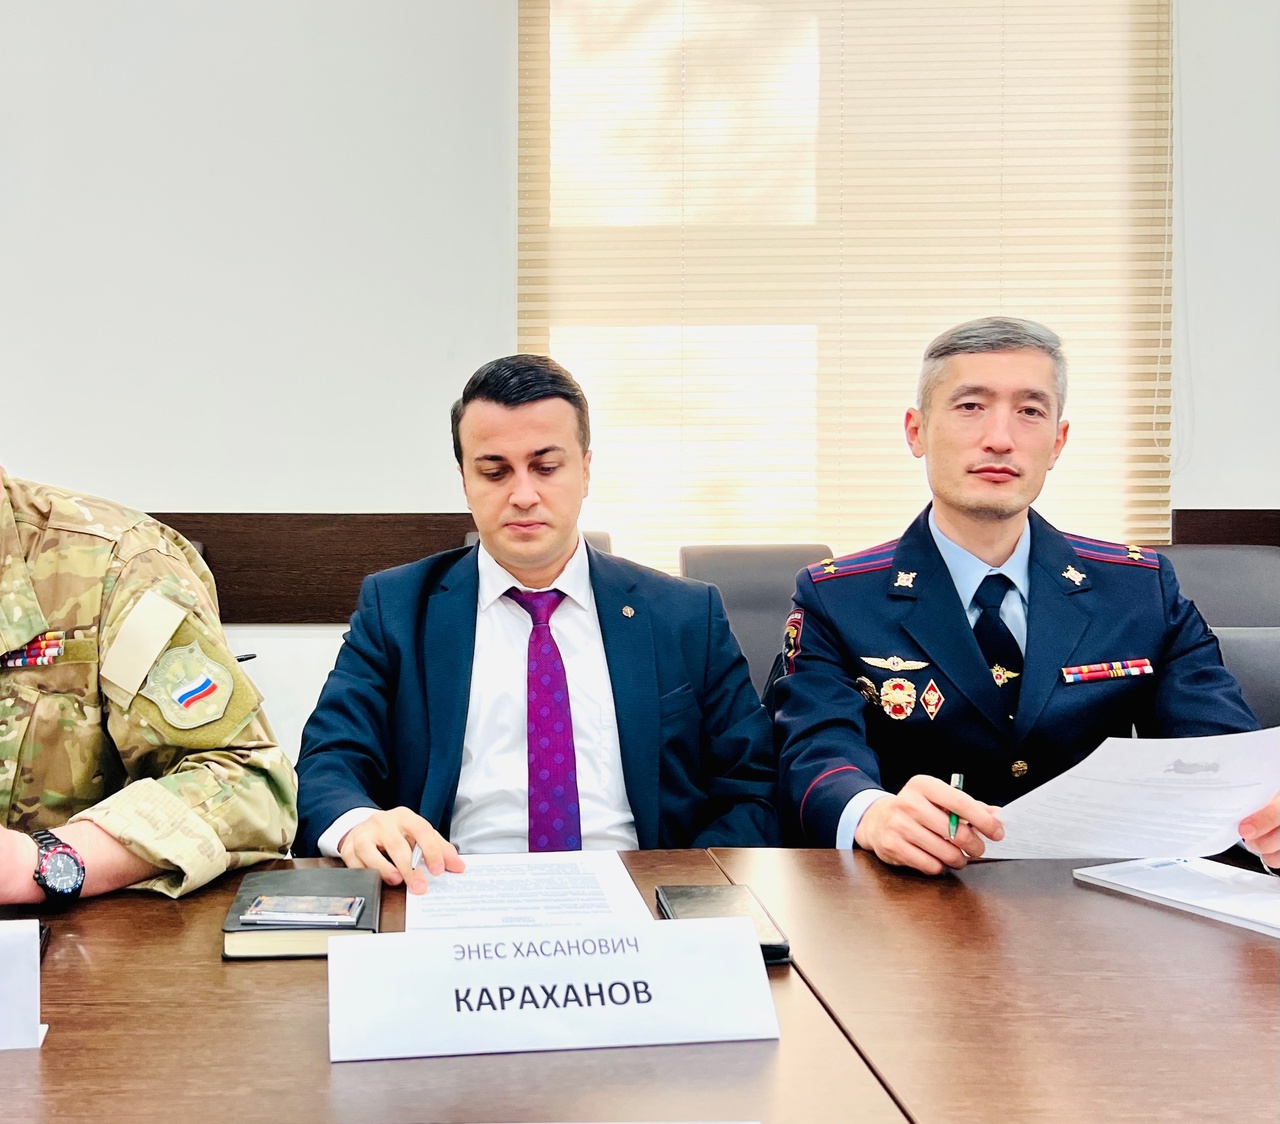 Караханов Энес принял участие в конференции «Единение»